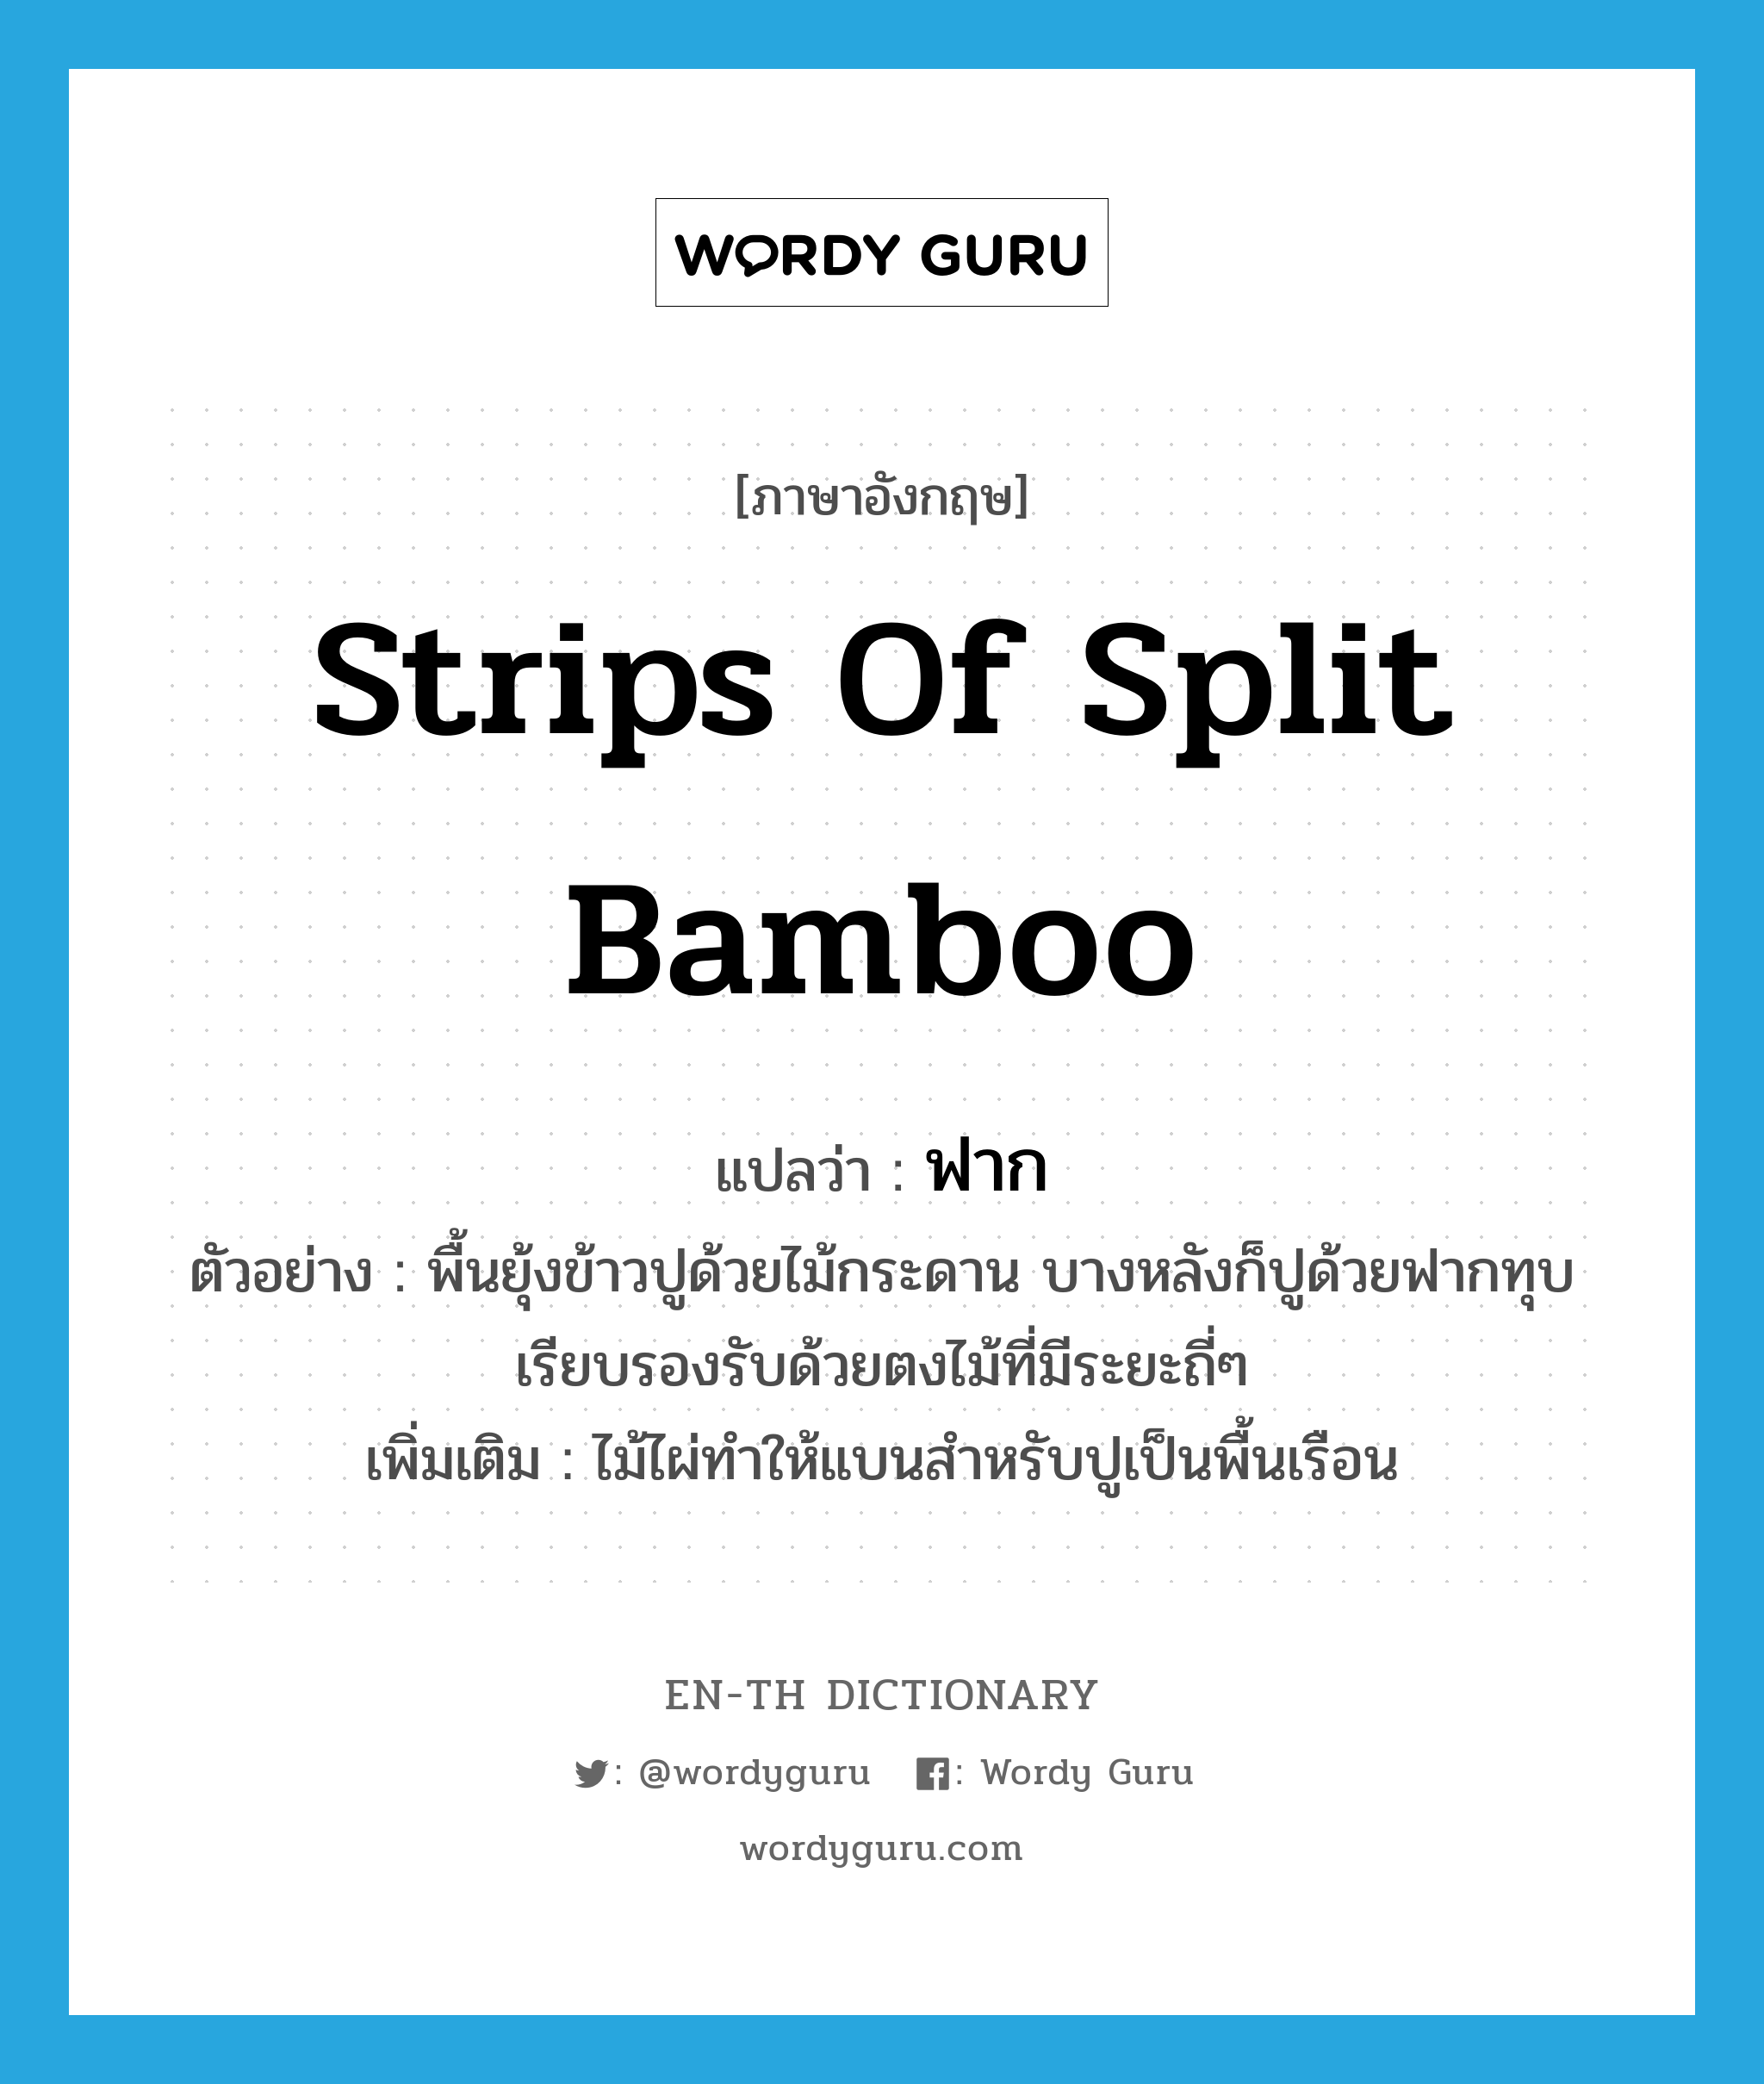 ฟาก ภาษาอังกฤษ?, คำศัพท์ภาษาอังกฤษ ฟาก แปลว่า strips of split bamboo ประเภท N ตัวอย่าง พื้นยุ้งข้าวปูด้วยไม้กระดาน บางหลังก็ปูด้วยฟากทุบเรียบรองรับด้วยตงไม้ที่มีระยะถี่ๆ เพิ่มเติม ไม้ไผ่ทำให้แบนสำหรับปูเป็นพื้นเรือน หมวด N